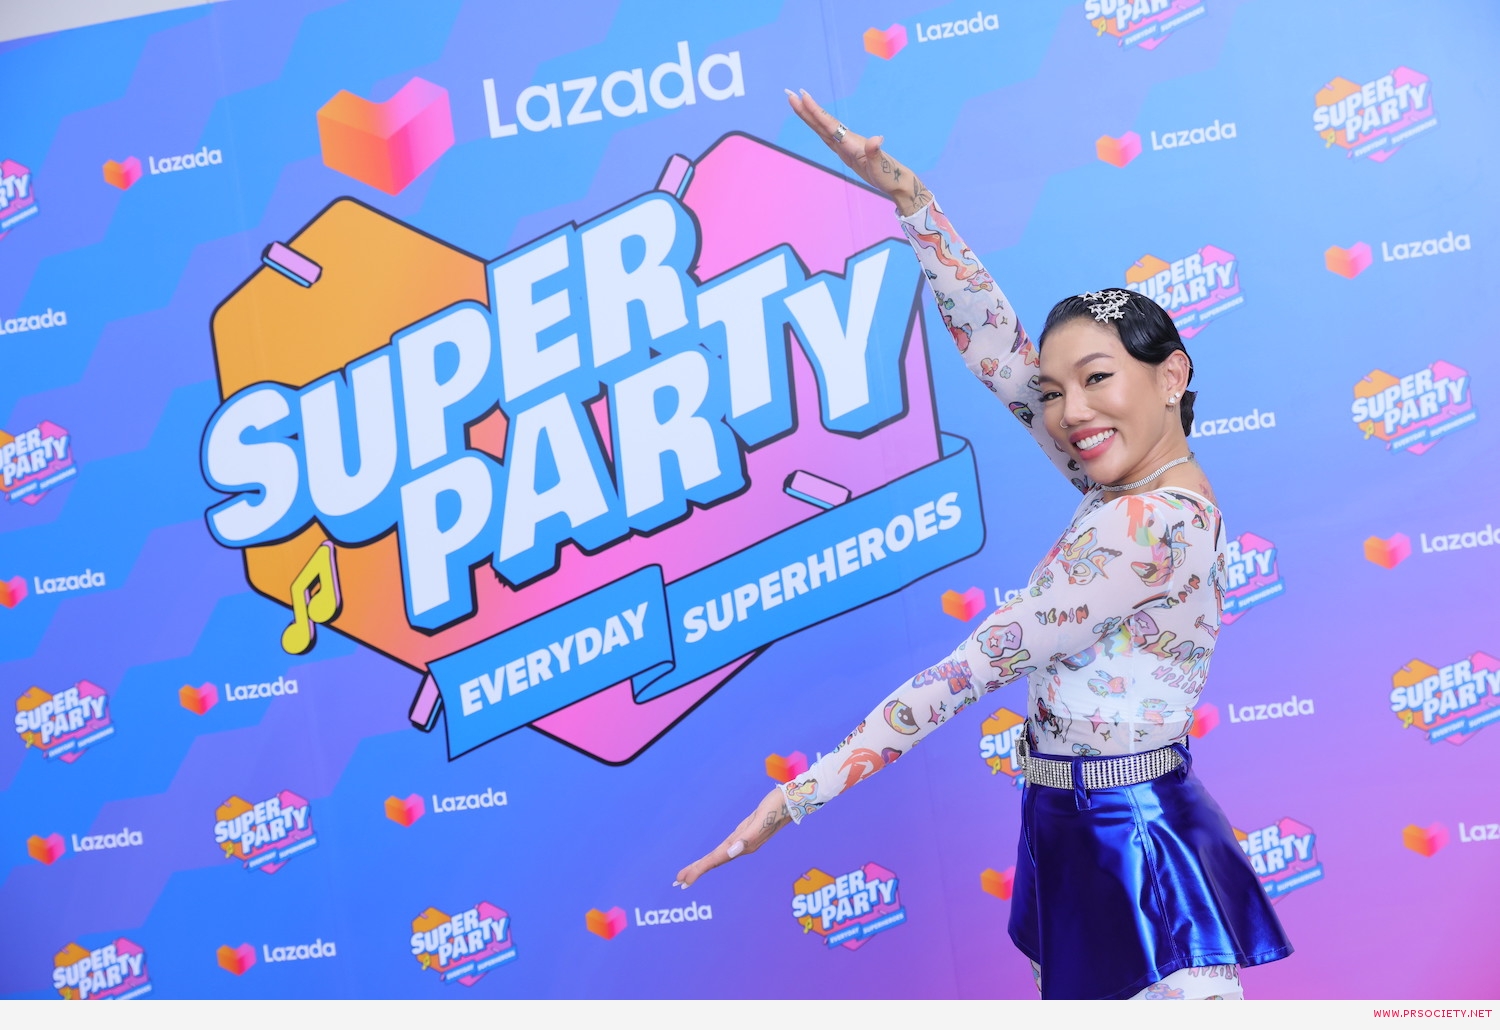 Da_Lazada Super Party (6)